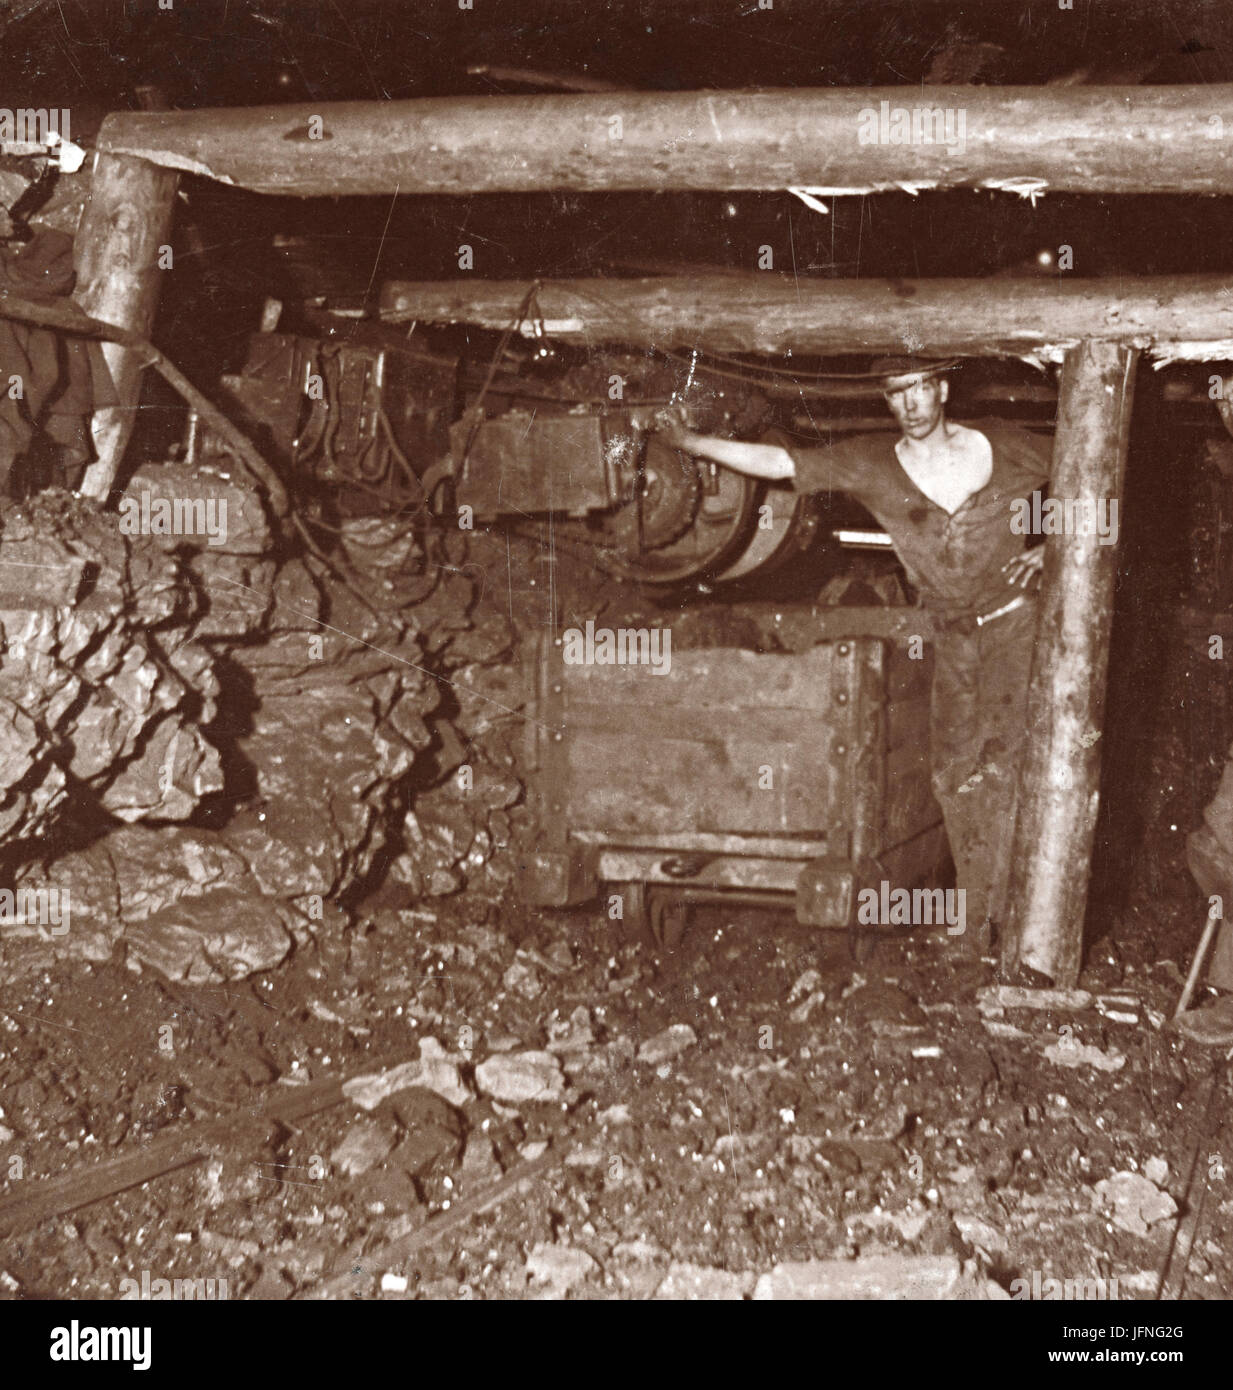 Collier macchina di lavoro trasporto di carbone dalla superficie di taglio di un carro o vasca per il trasporto fuori della miniera, c.1920s, Regno Unito Foto Stock